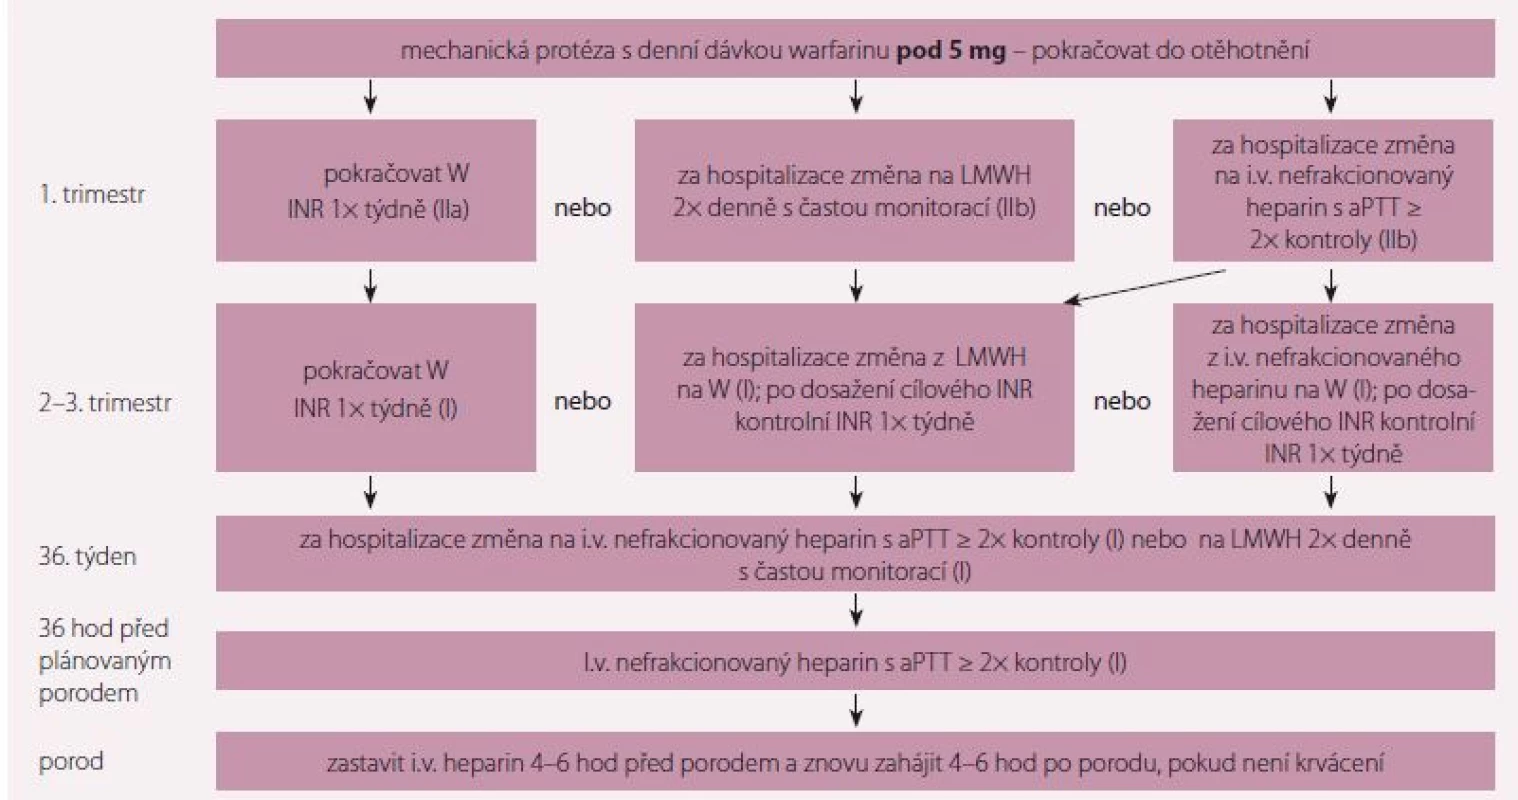 Doporučení k antikoagulační léčbě u pacientek s mechanickou chlopenní náhradou a denní dávkou warfarinu pod 5 mg. Upraveno
podle [1].